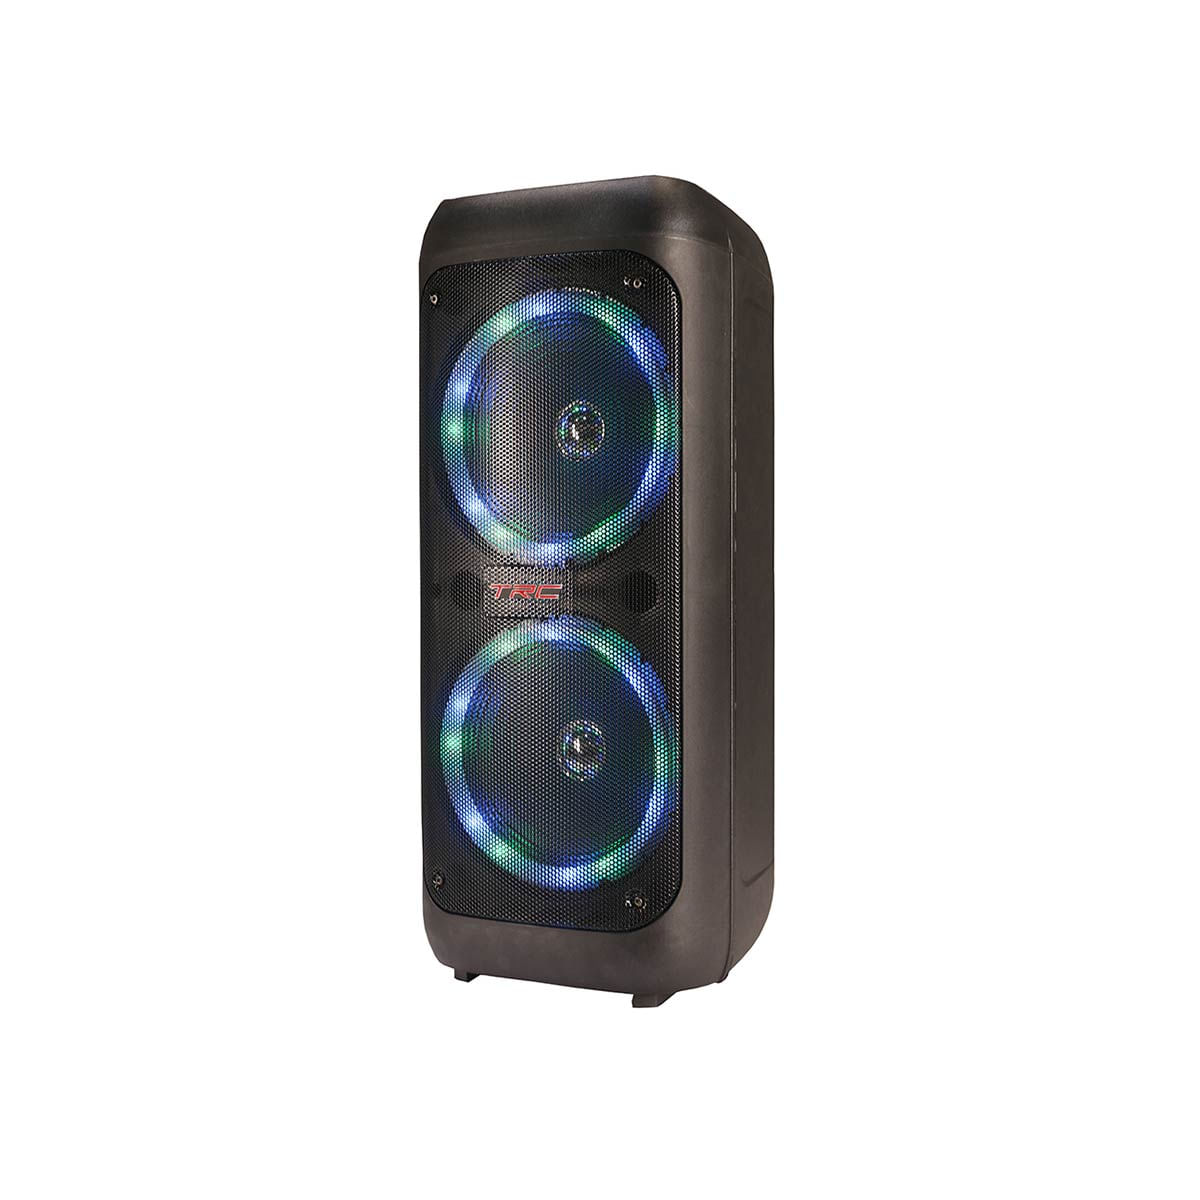 Caixa De Som Amplificada Trc 5540 Bluetooth Usb Iluminação Frontal Em Led Rádio Fm Bateria Interna 400W